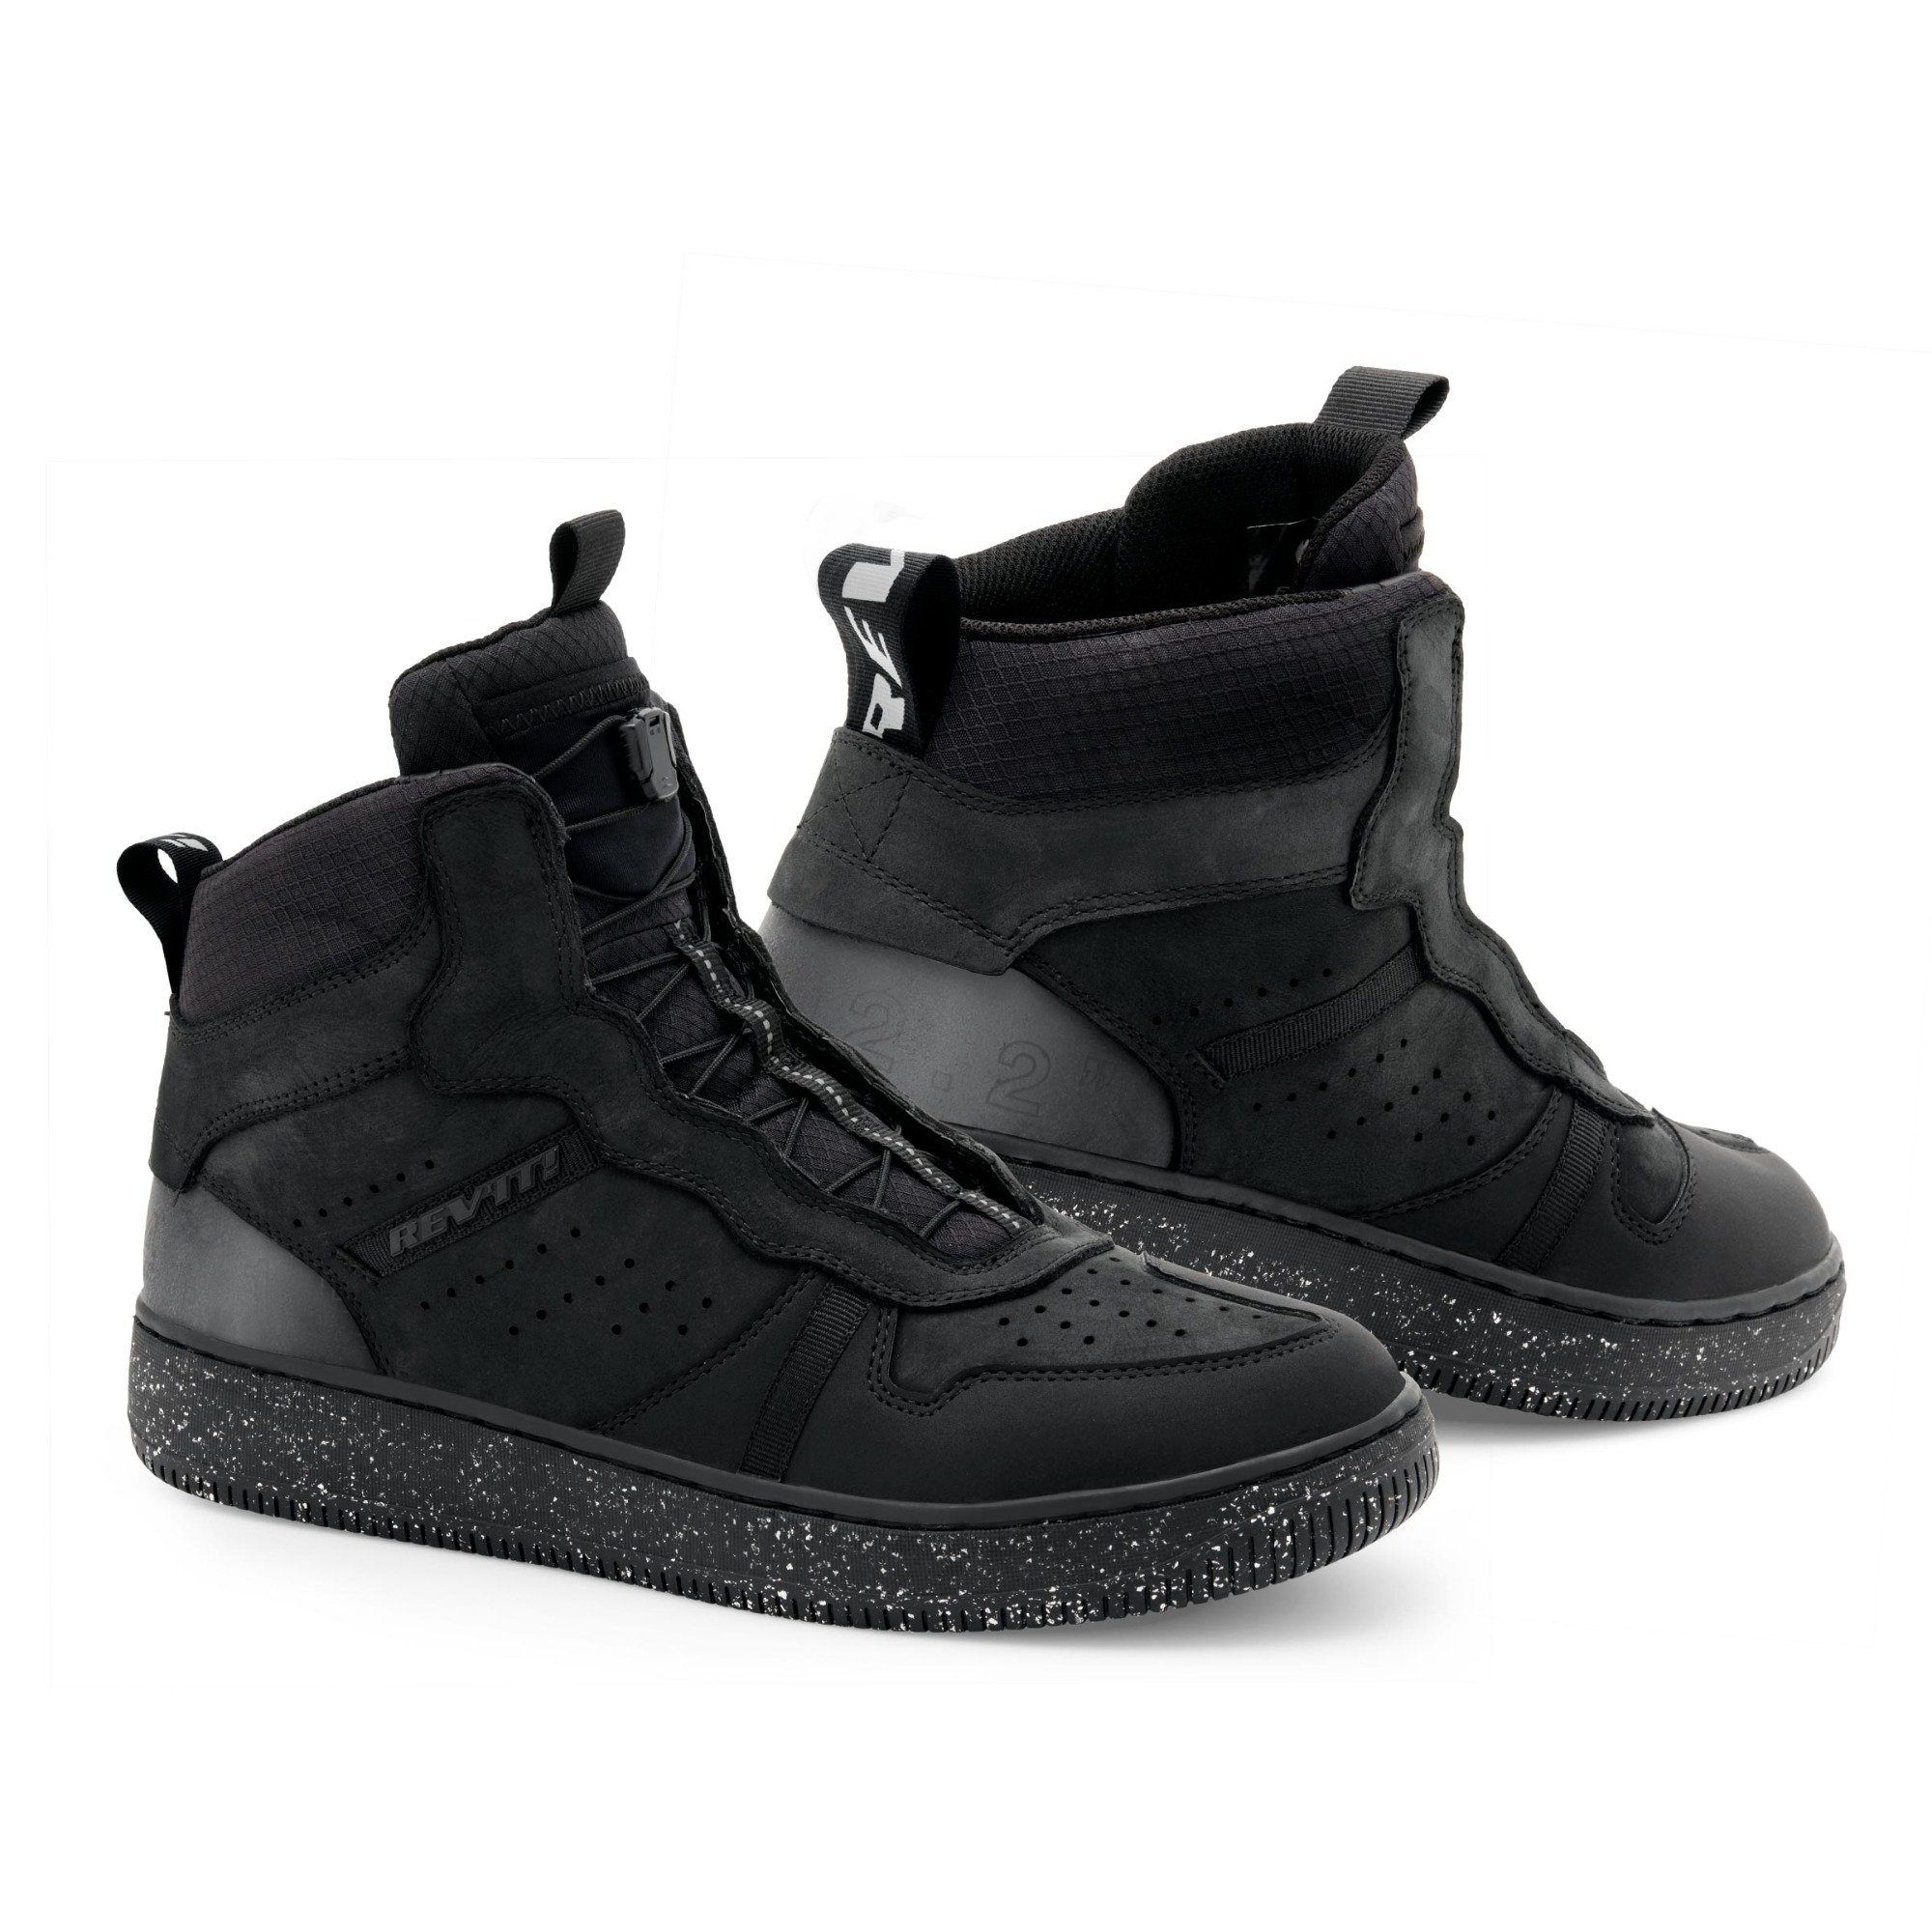 Image of REV'IT! Shoes Cayman Black Size 40 EN